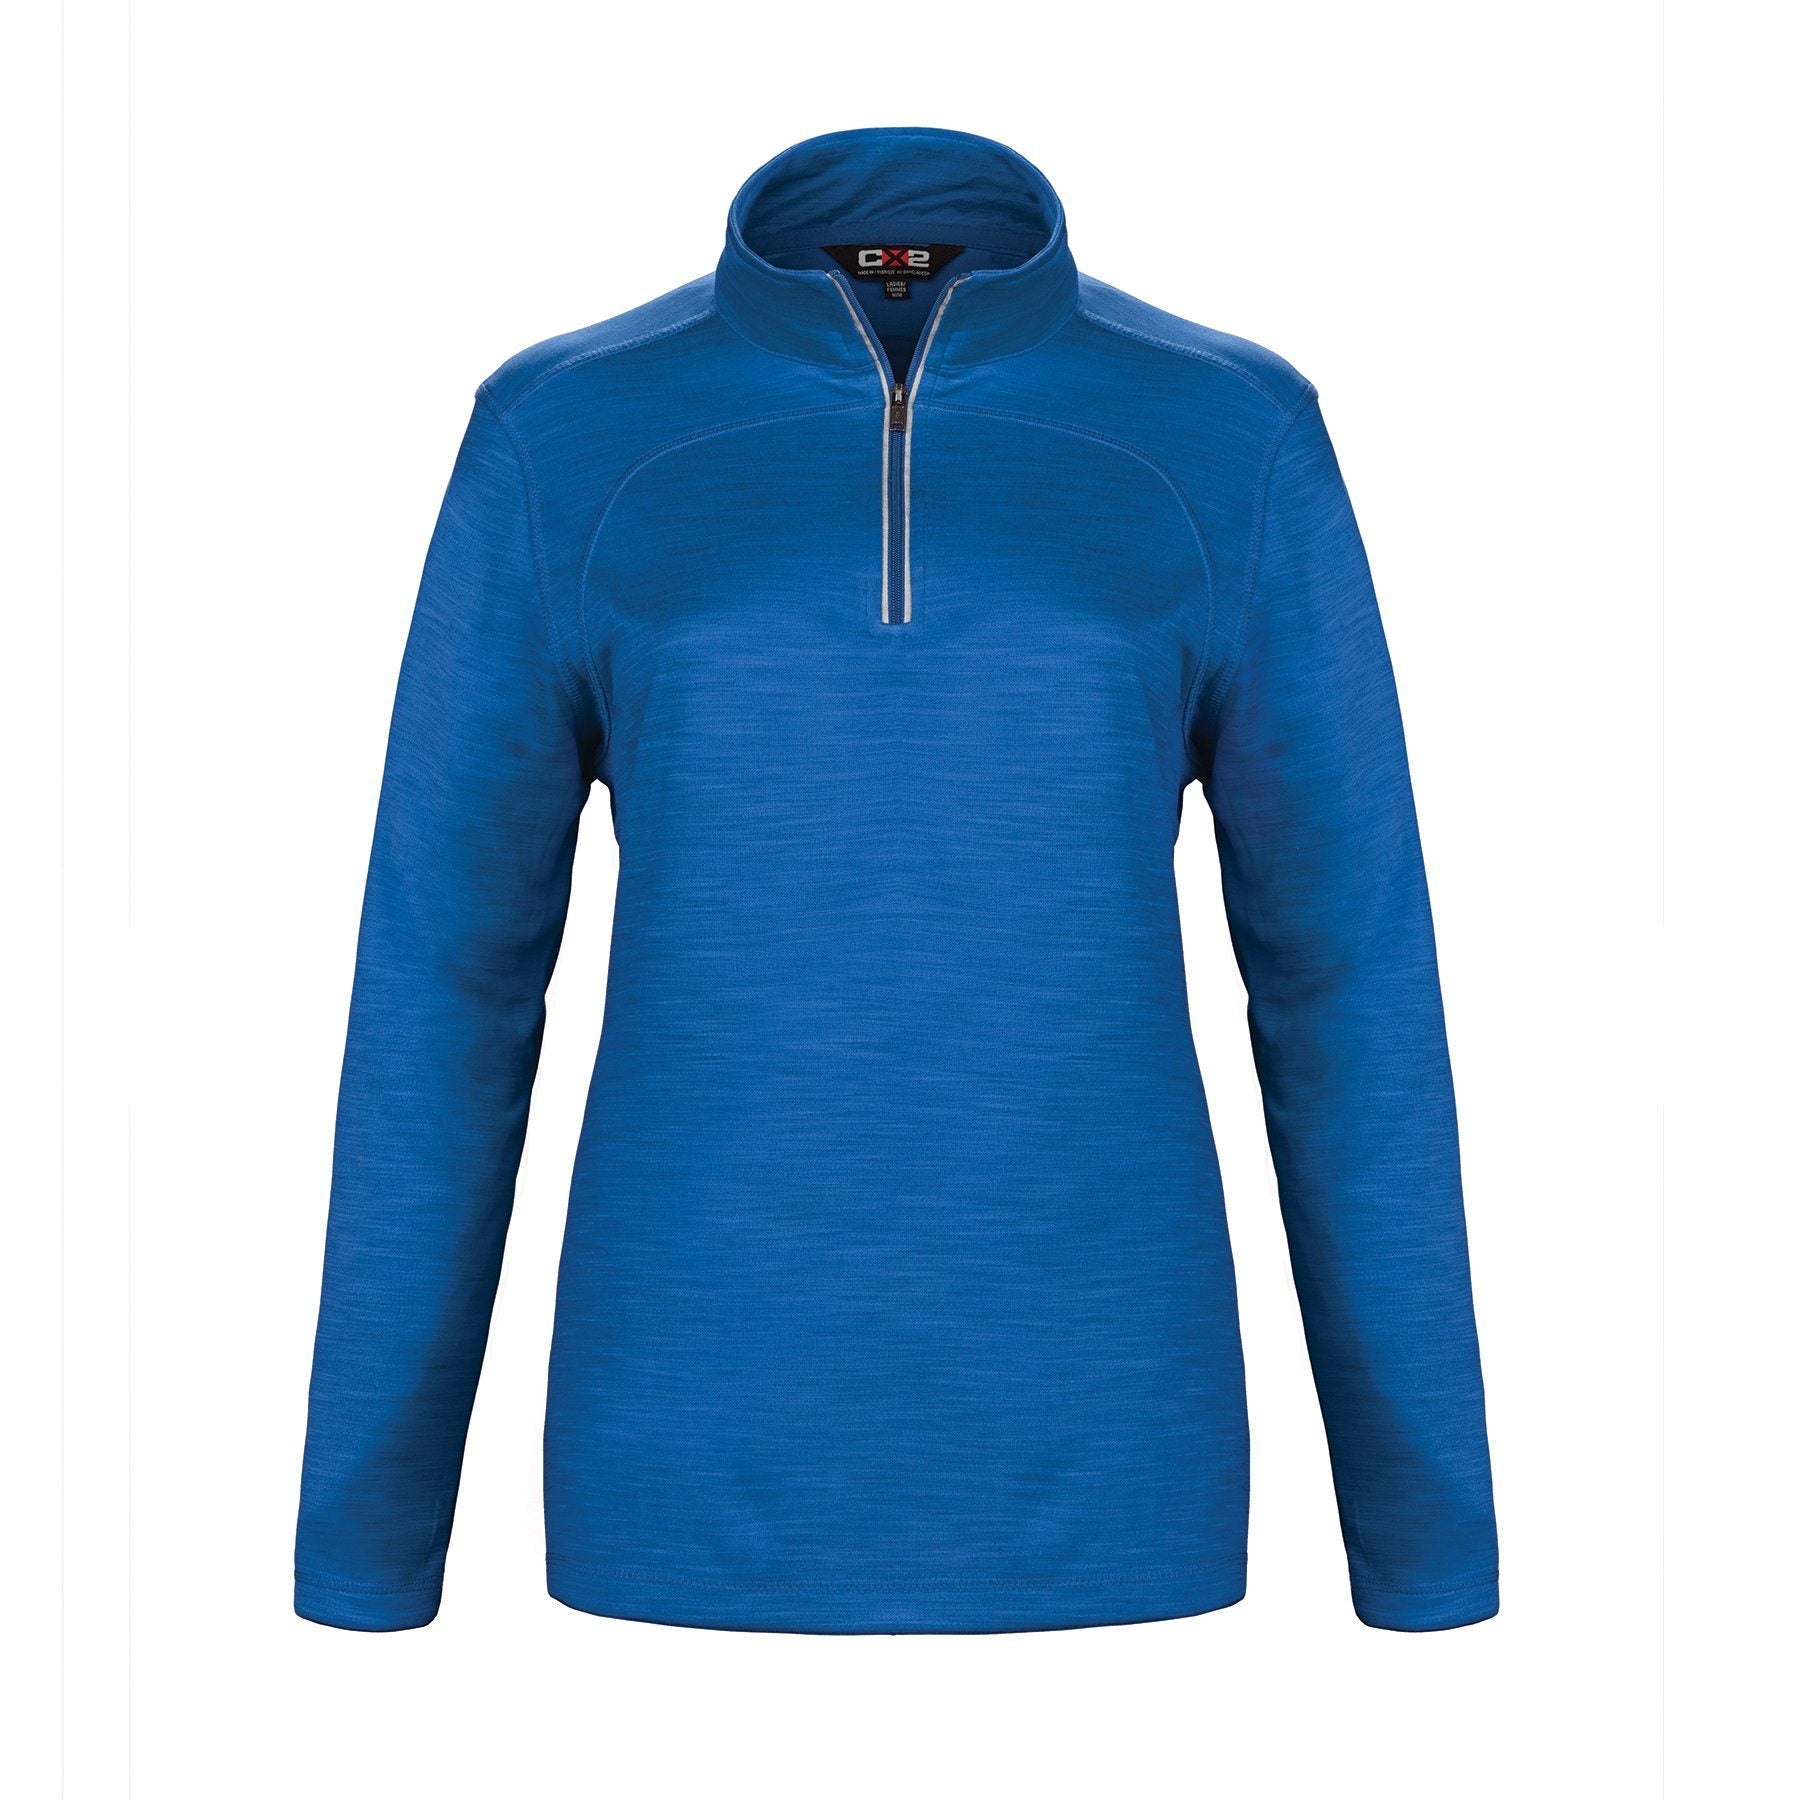 Canada Sportswear  - Lightweight Zip Sweater: Women's Cut Quarter Zip - L00876 - Cobalt Blue